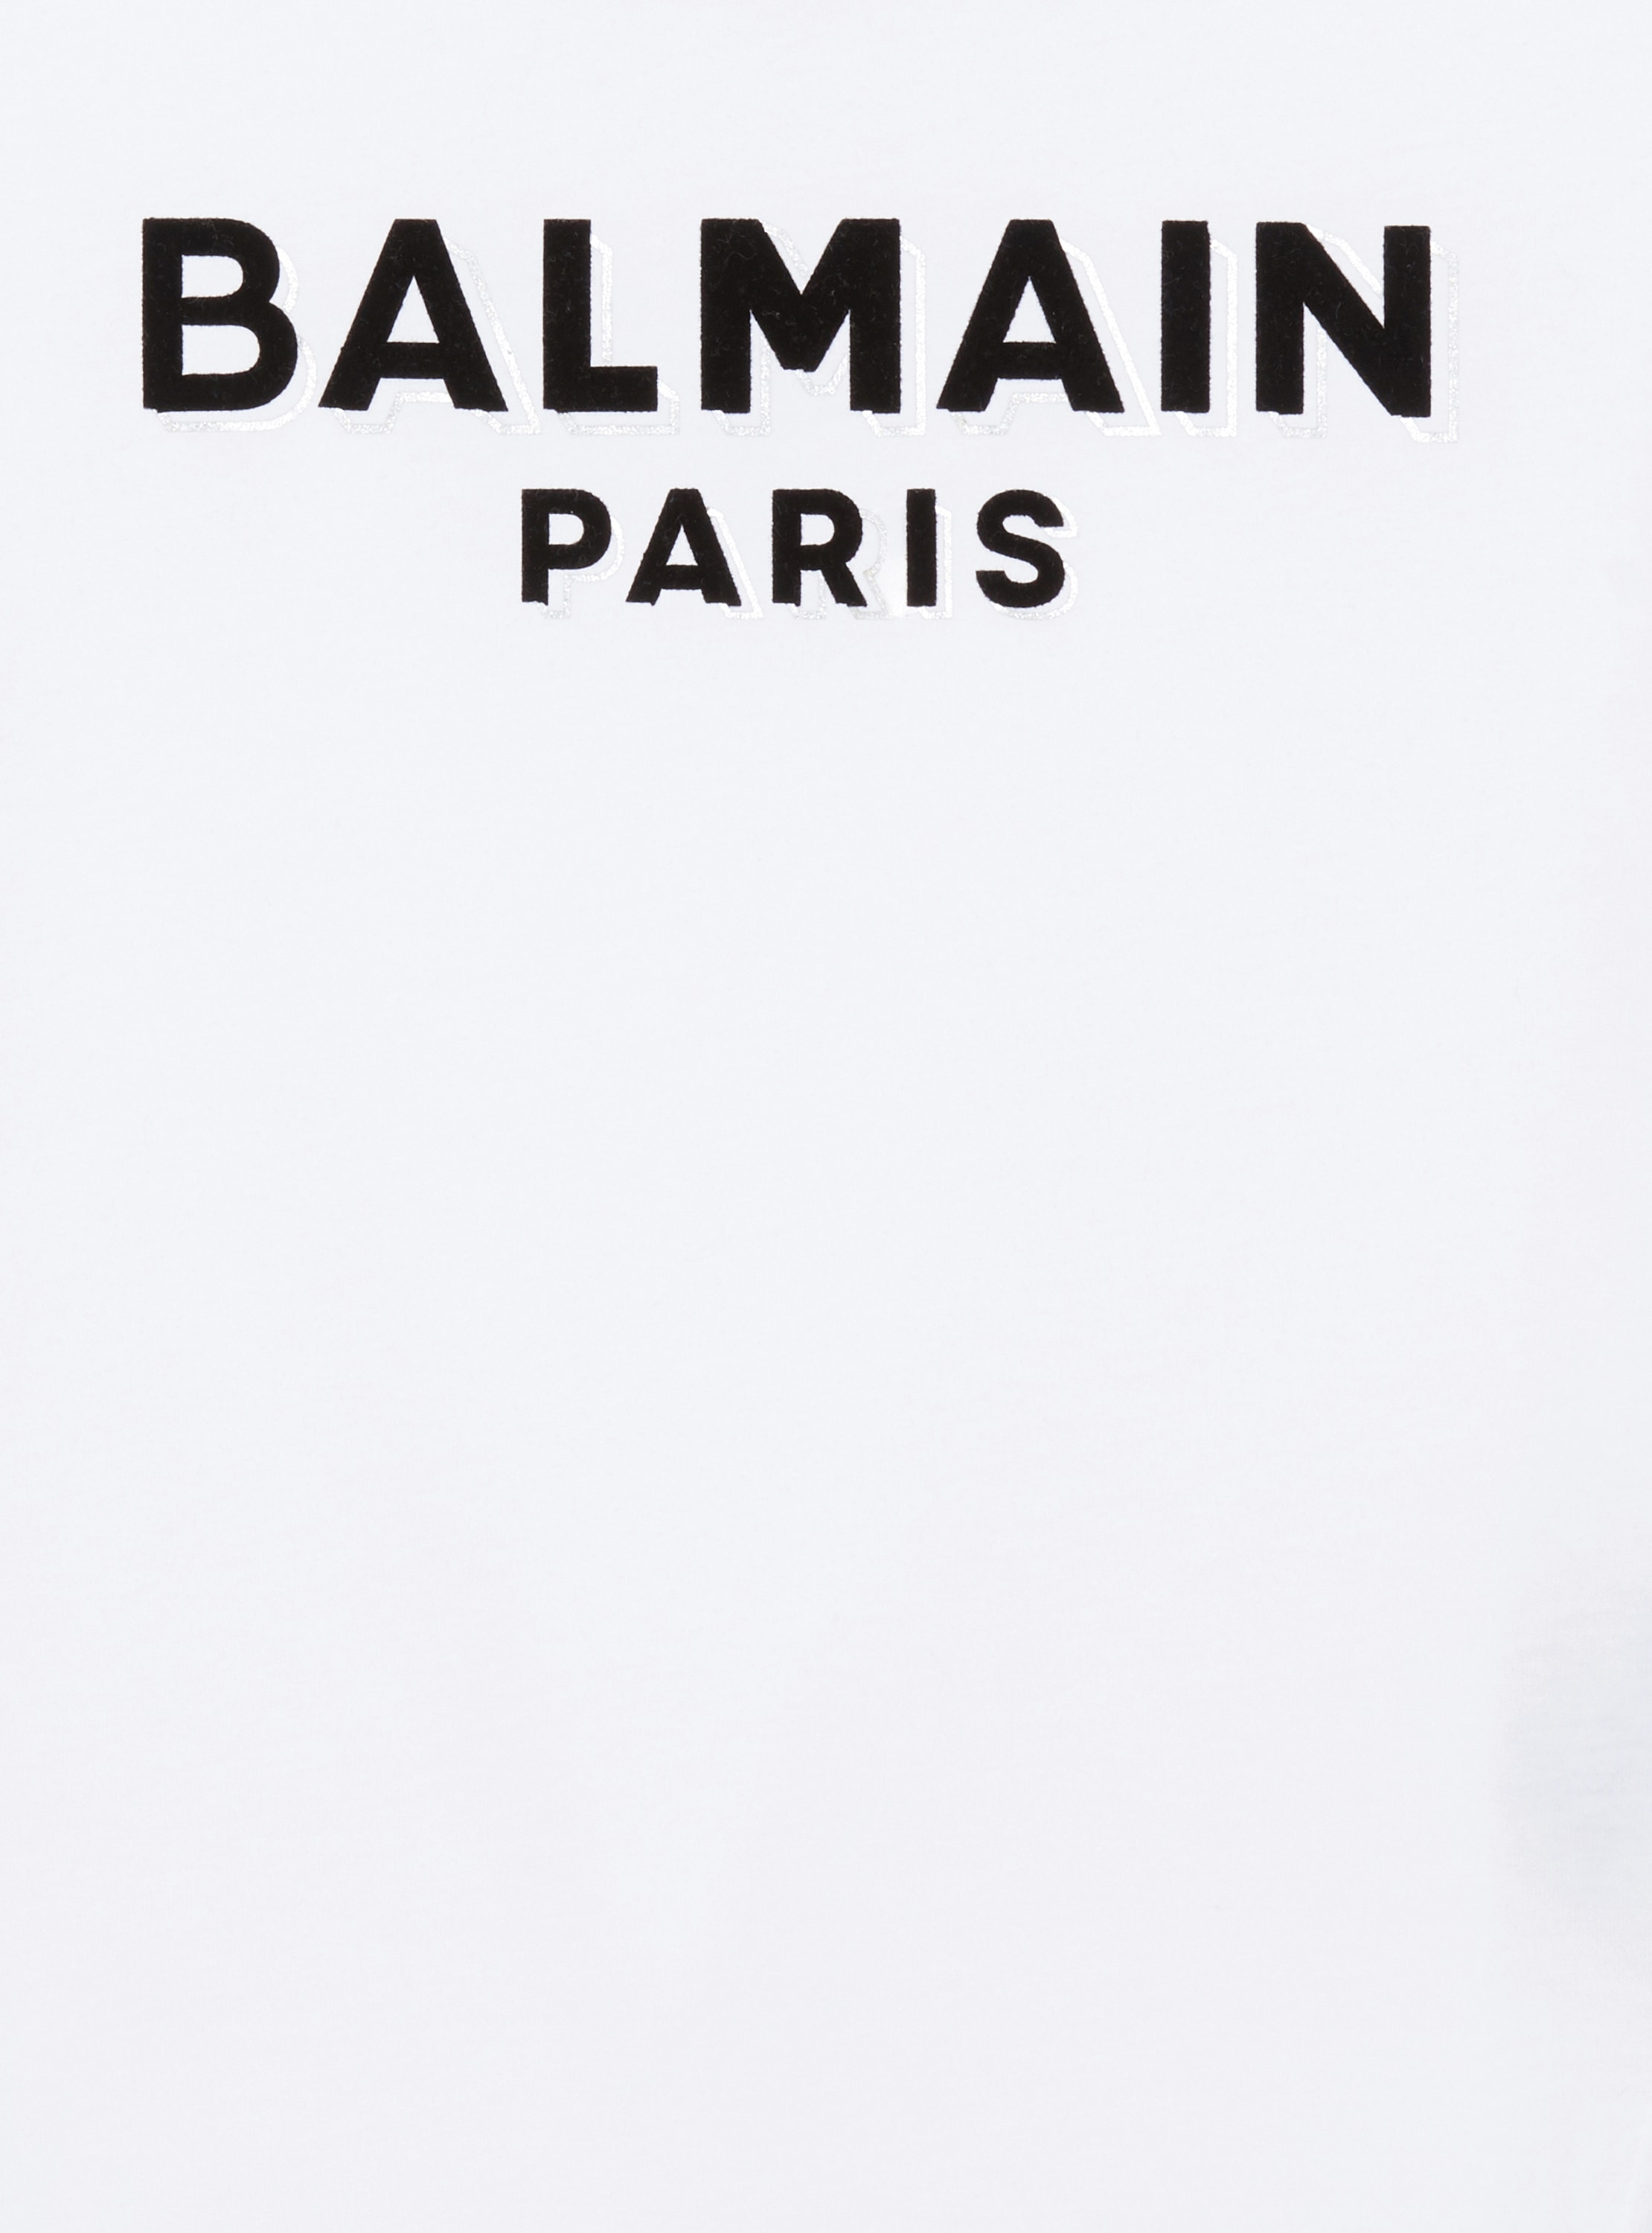 T-shirt Balmain Paris